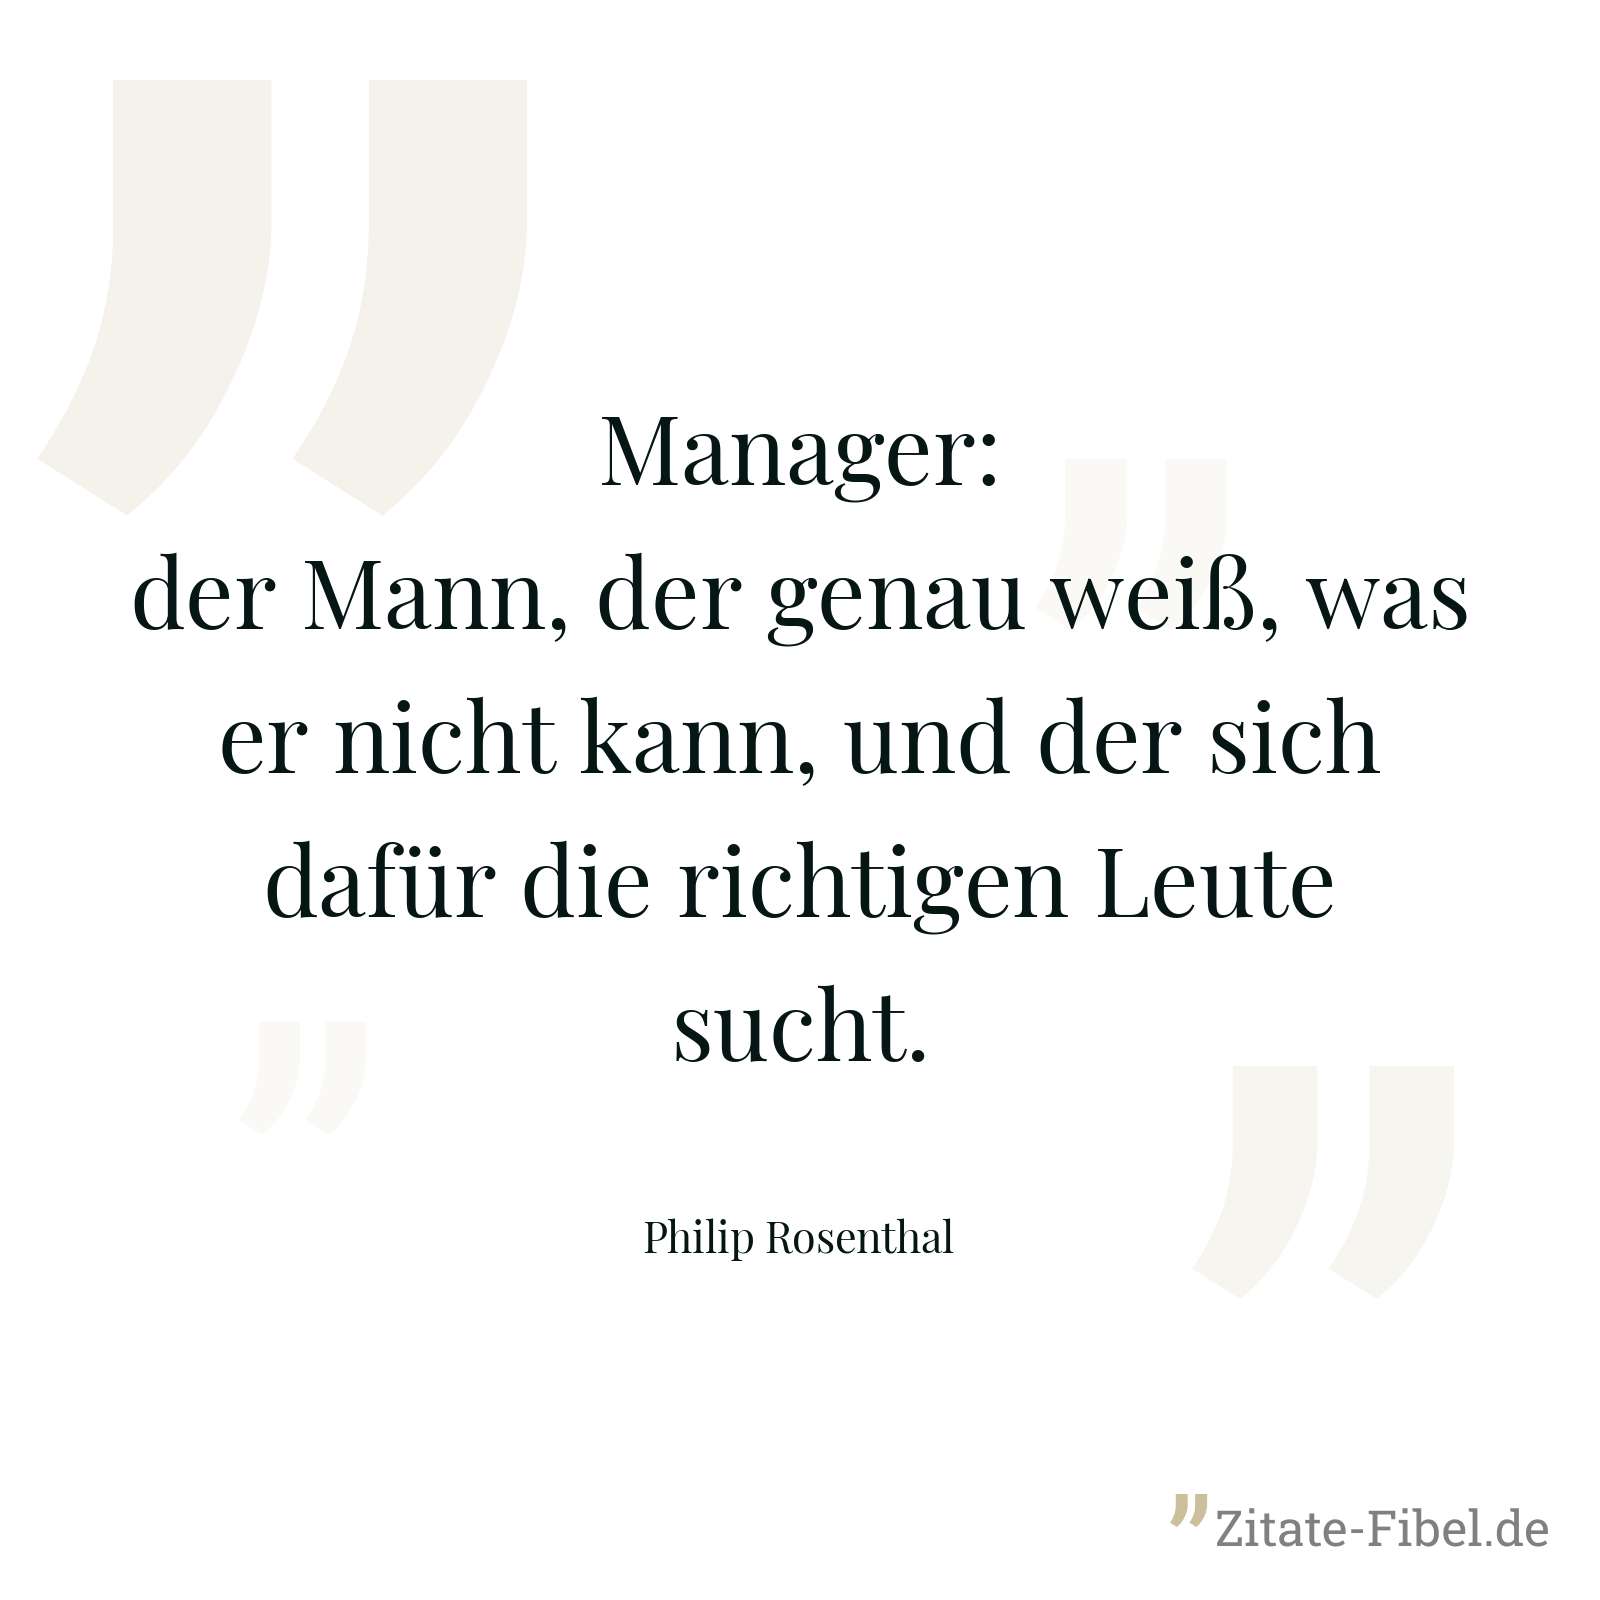 Manager: der Mann, der genau weiß, was er nicht kann, und der sich dafür die richtigen Leute sucht. - Philip Rosenthal